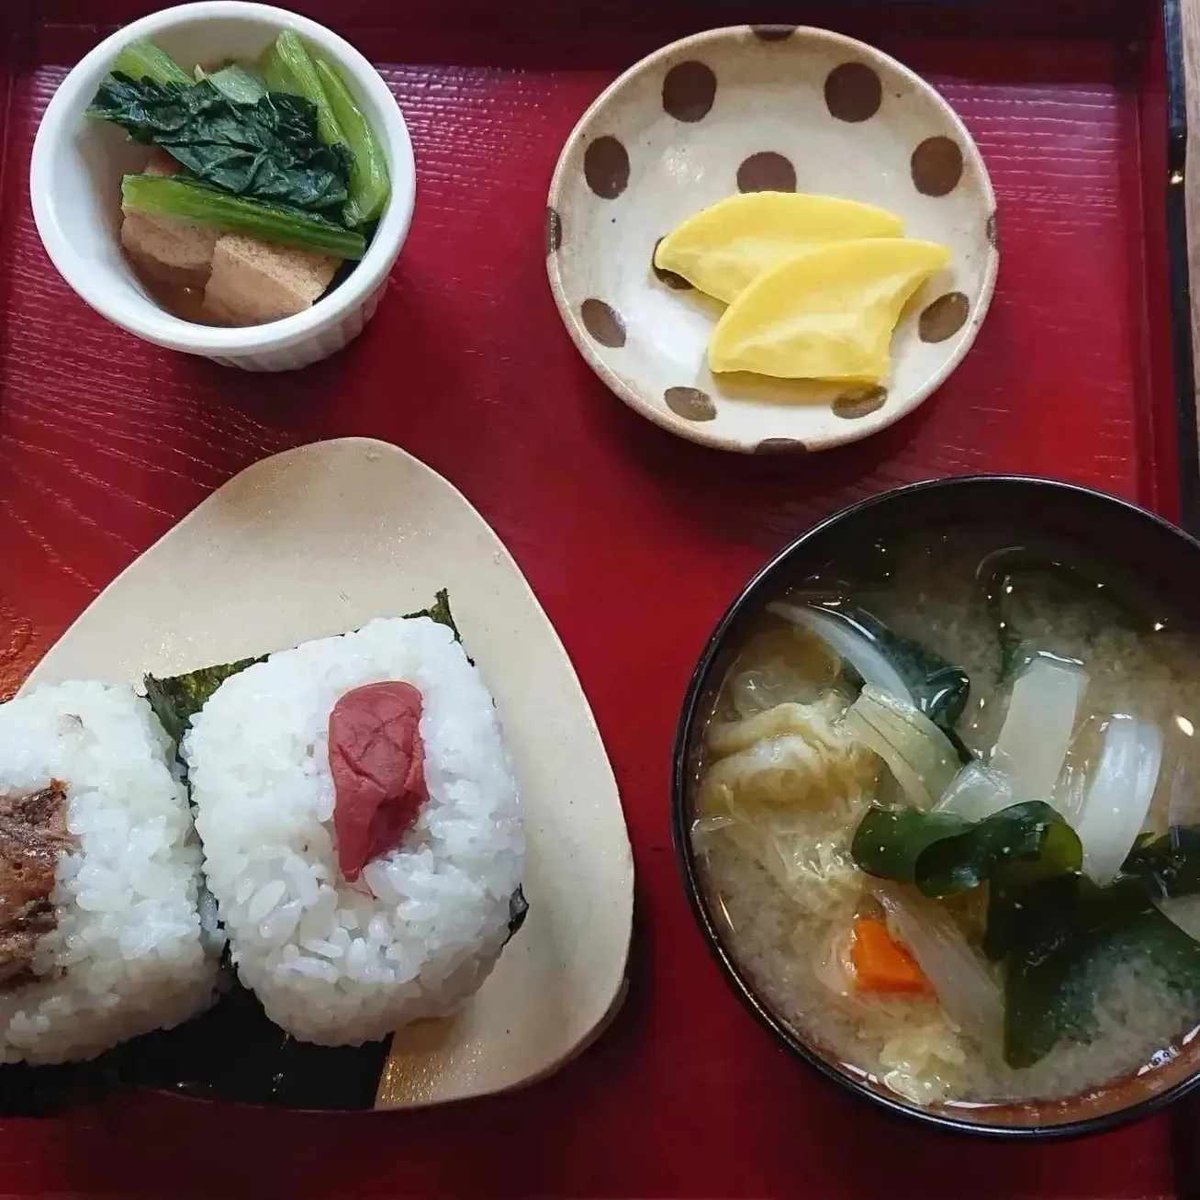 嬉しすぎること❗
来月石川県へ炊き出しのボランティア行くことになりました🍙
私のおむすびとお味噌汁で元気届けます❗
#カワキン
#おむすび